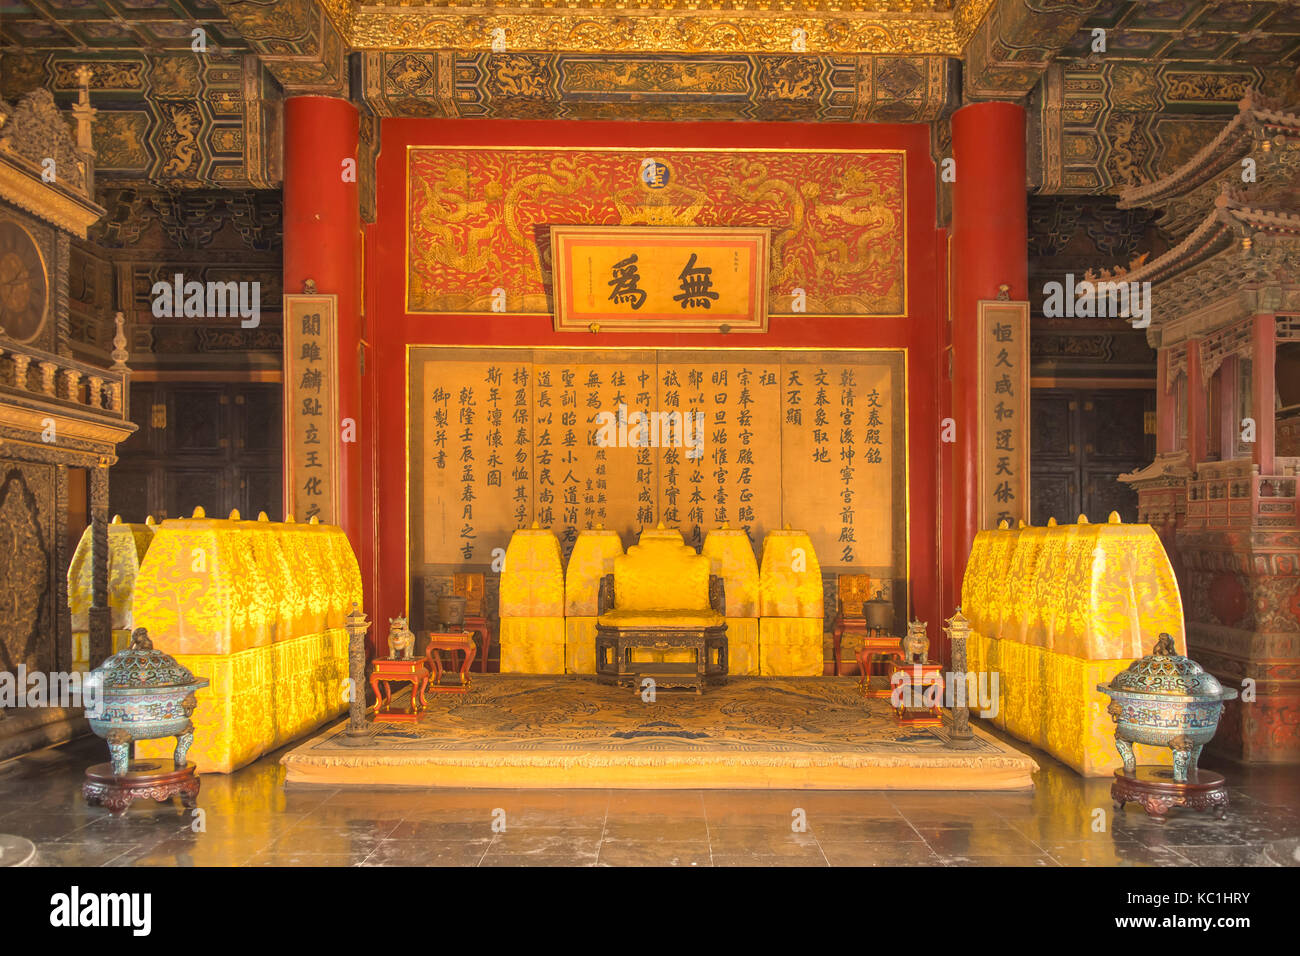 Dentro del palacio de la pureza celestial en la ciudad prohibida, Beijing, China Foto de stock